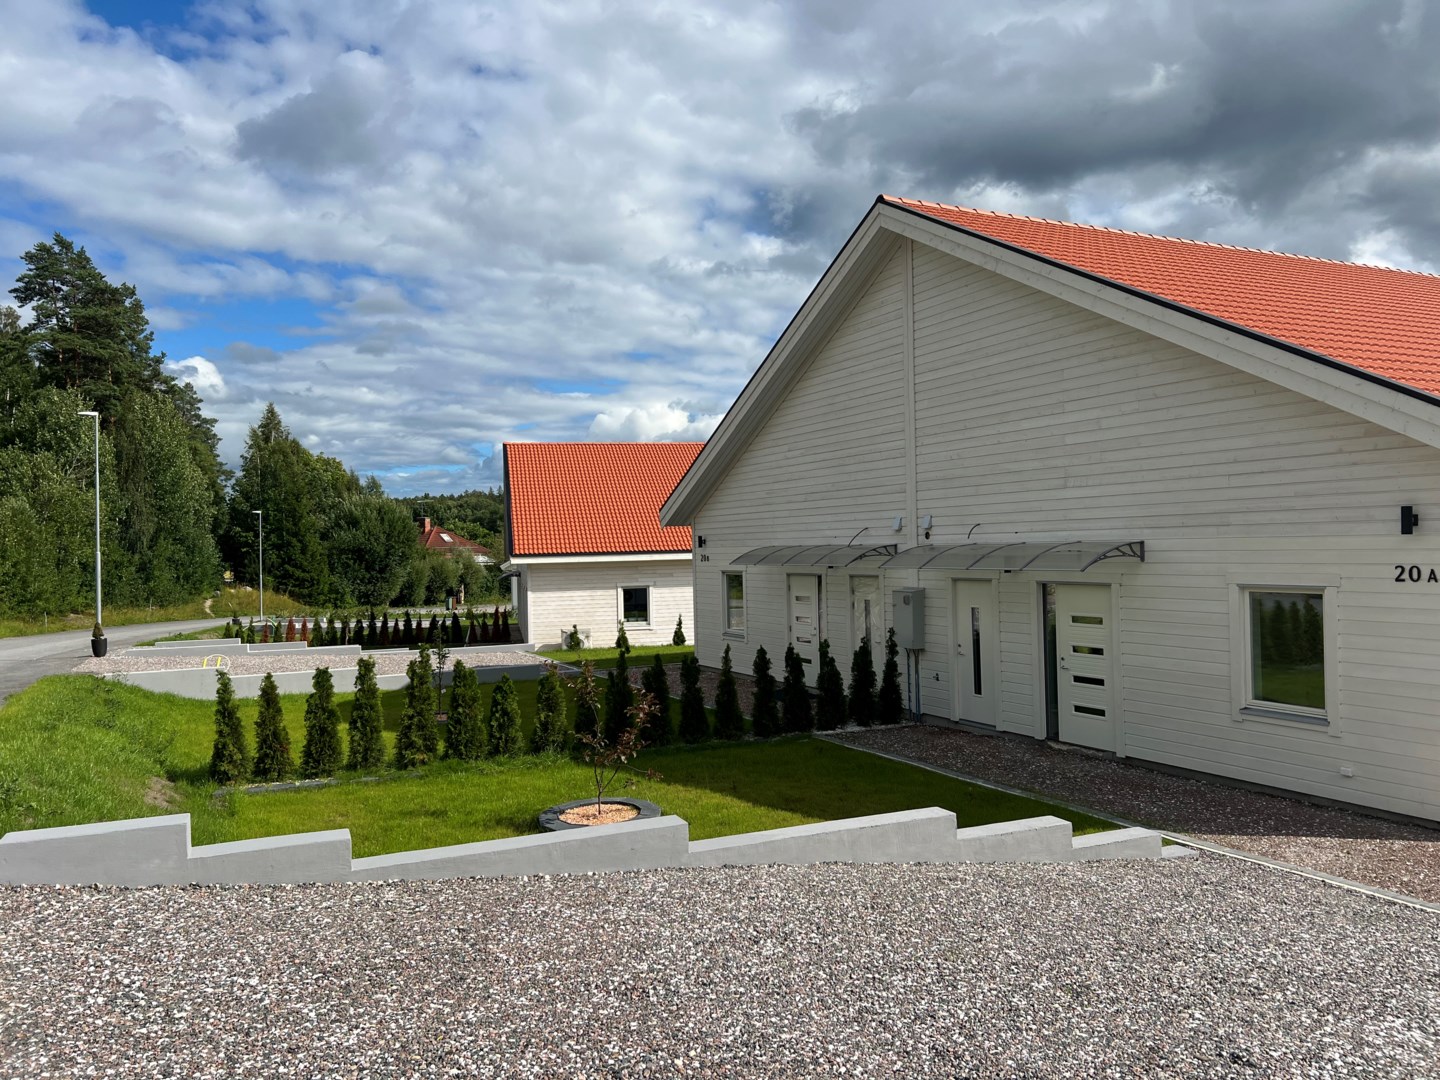 Bostadsrätt i Bergshammar, Nyköping, Södermanland, Jagbacken 20 A